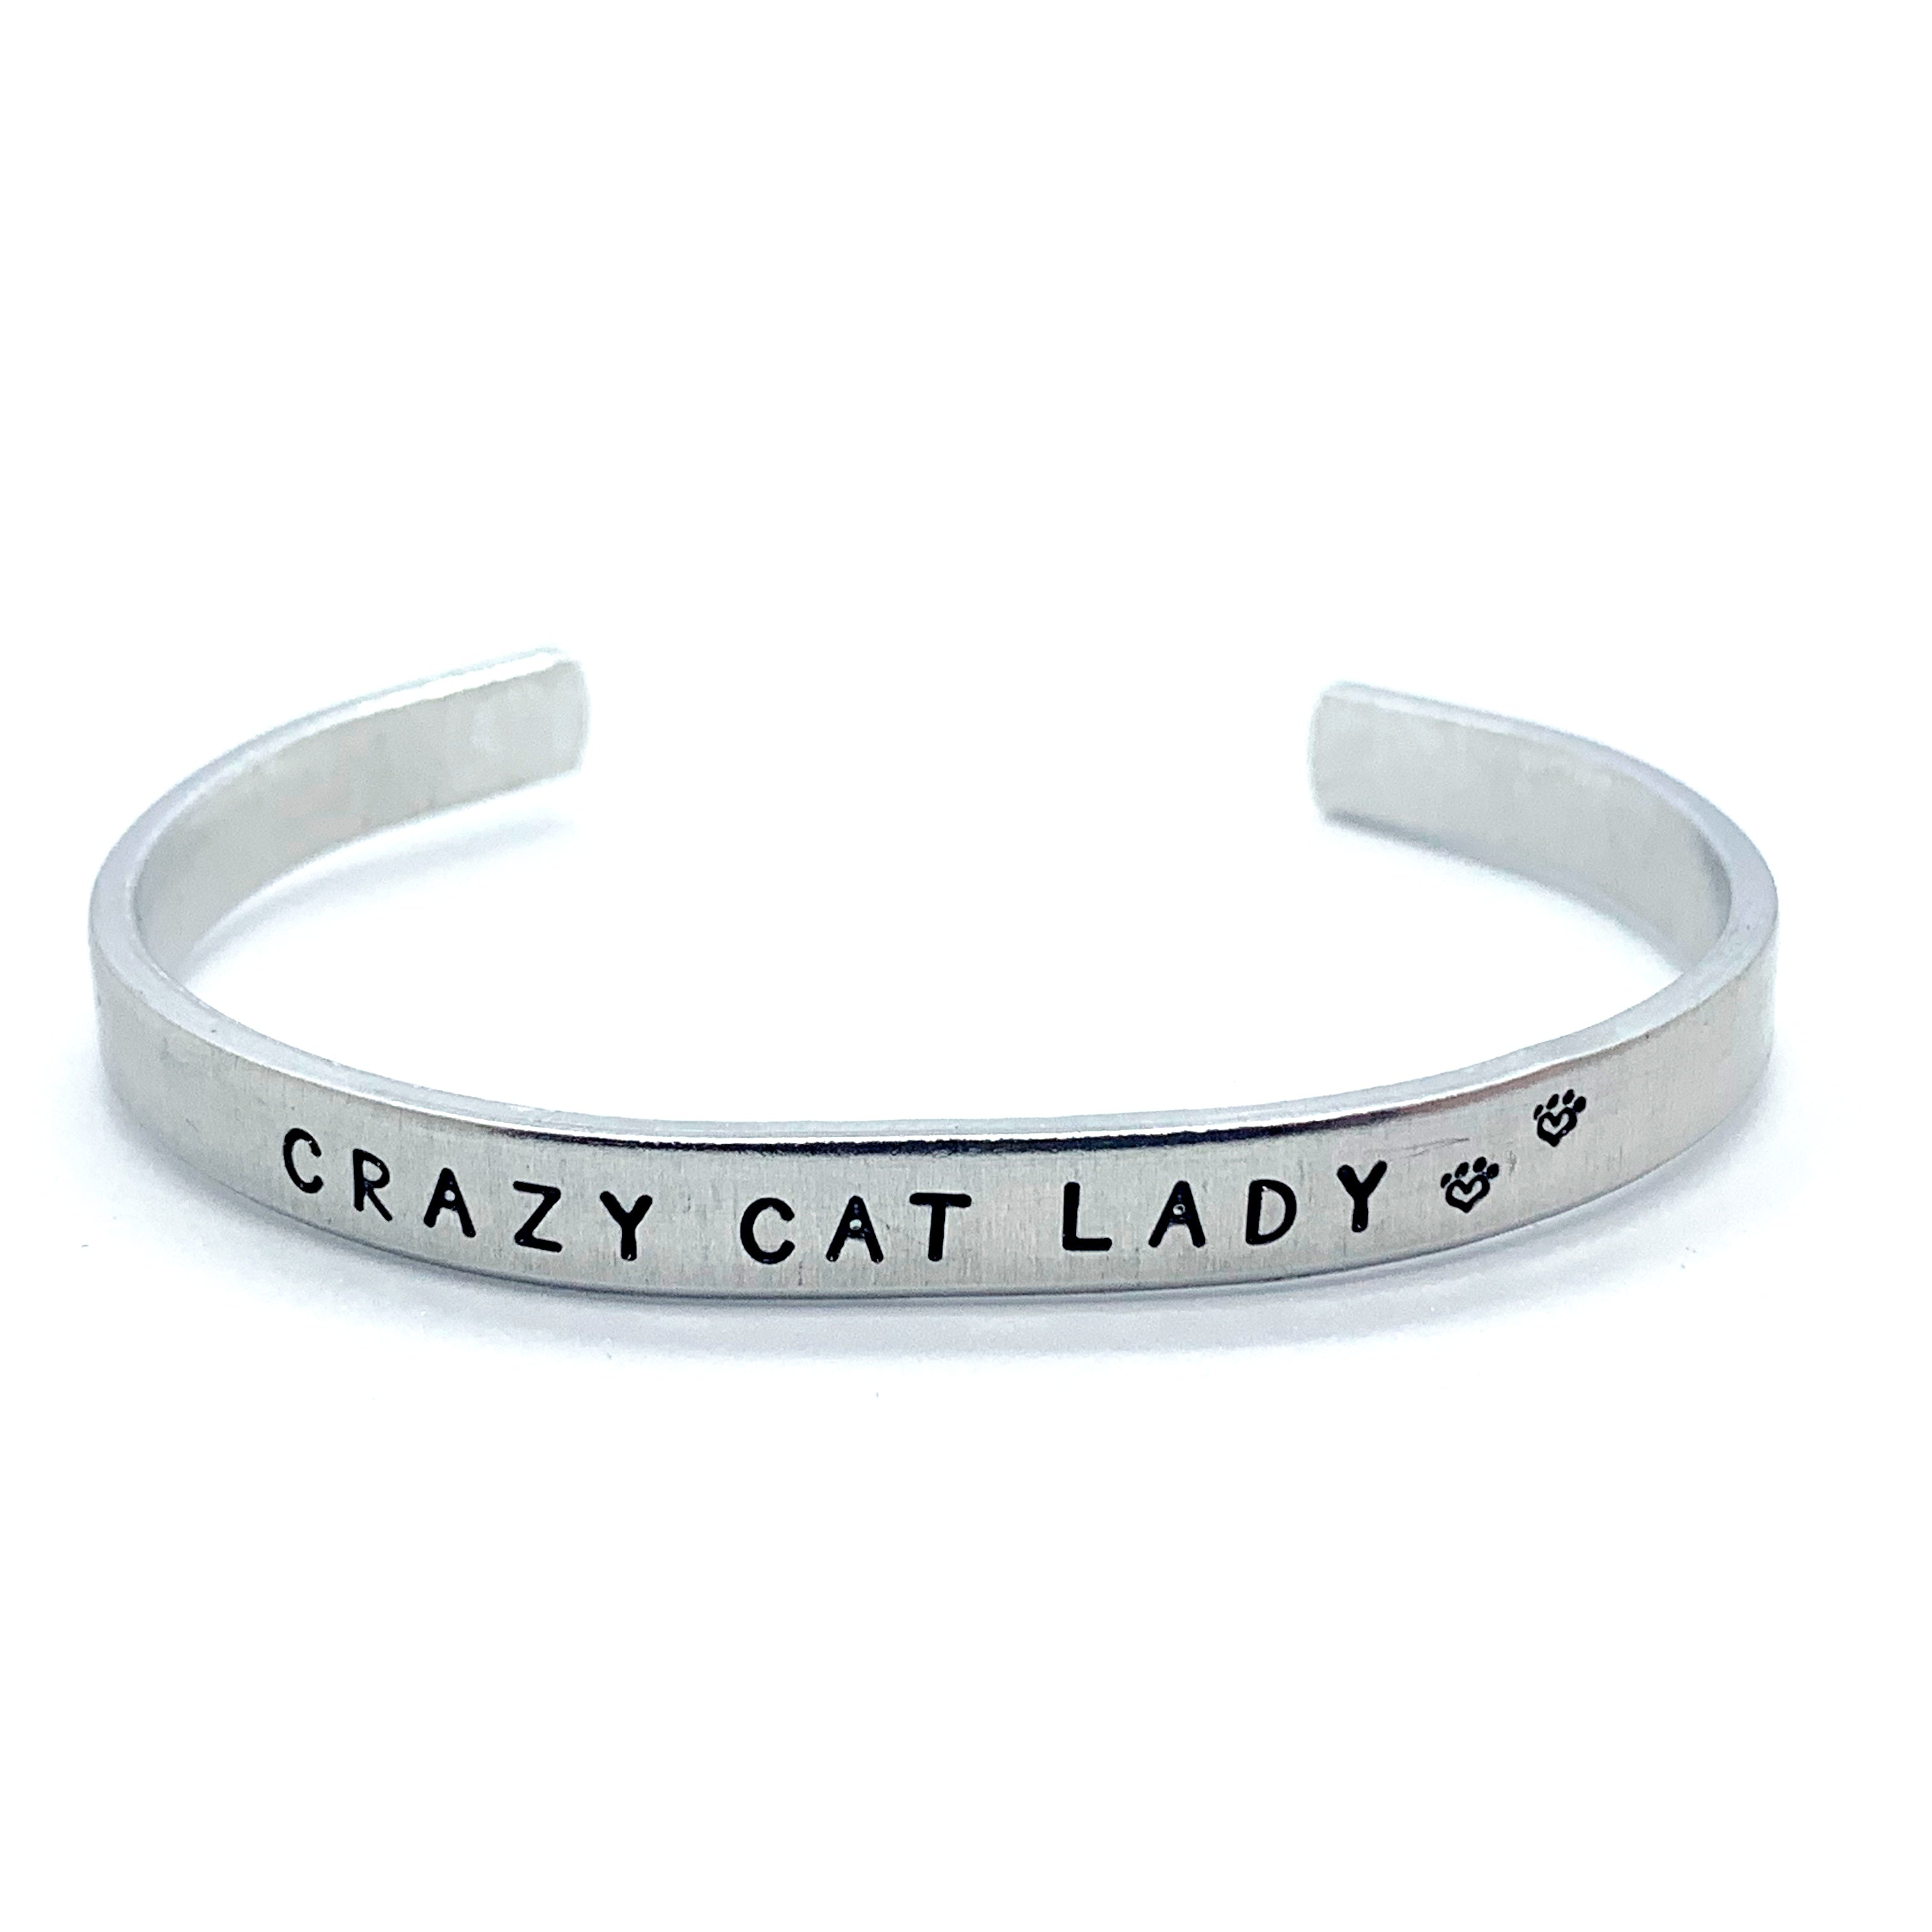 ¼ inch Aluminum Cuff - Crazy Cat Lady